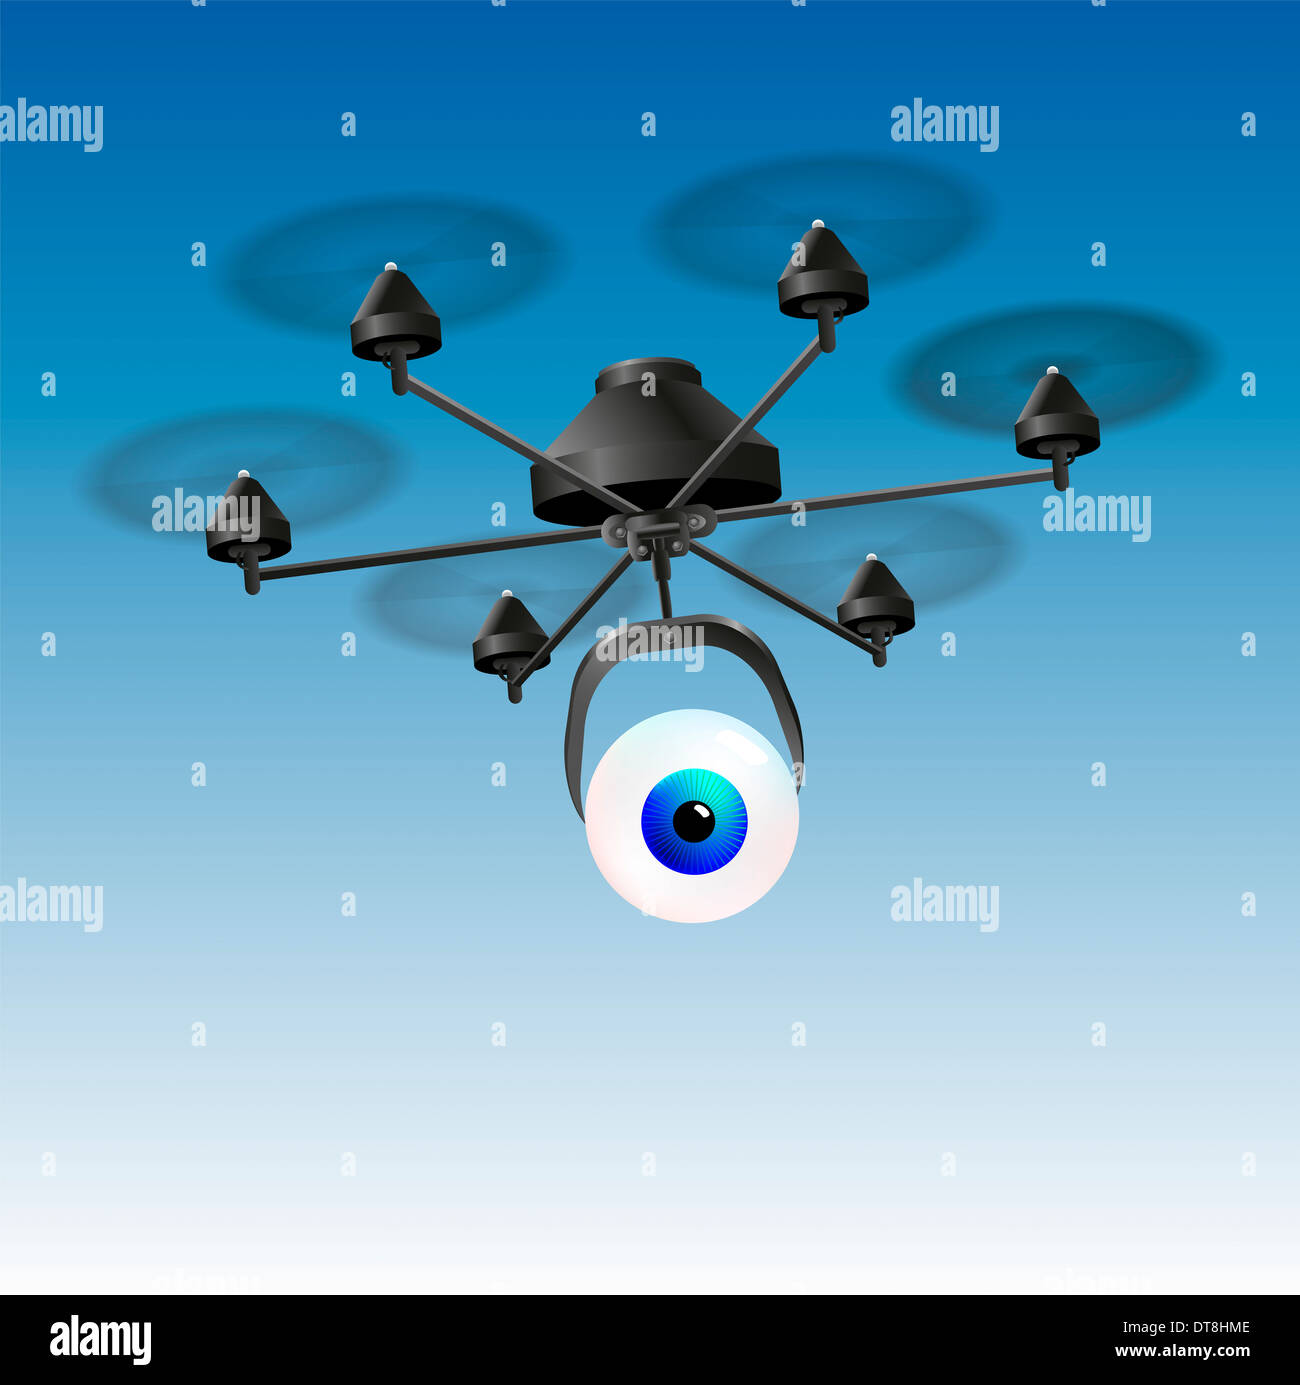 Drohne oder unmanned aerial vehicles (UAV) mit einem Auge statt einer Kamera. Stockfoto